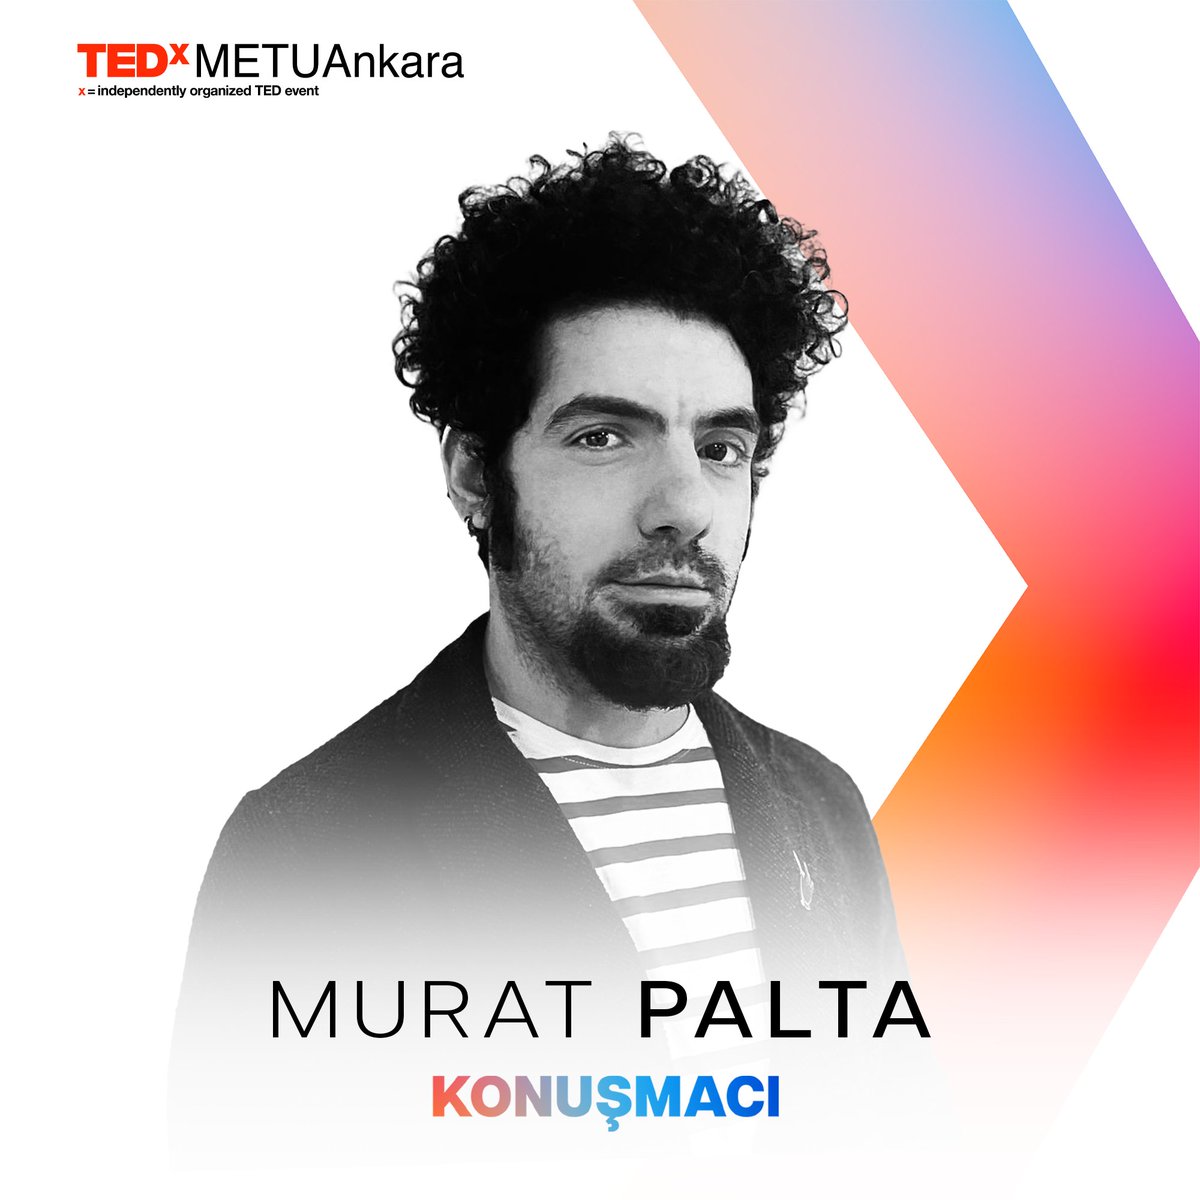 Murat Palta, bu sene TEDxMETUAnkara sahnesinde sizlerle! #tedxmetuankara #tedxtalks #tedtalks #ayna #odtü #paylaşmayadeğerfikirler #ideasworthspreading